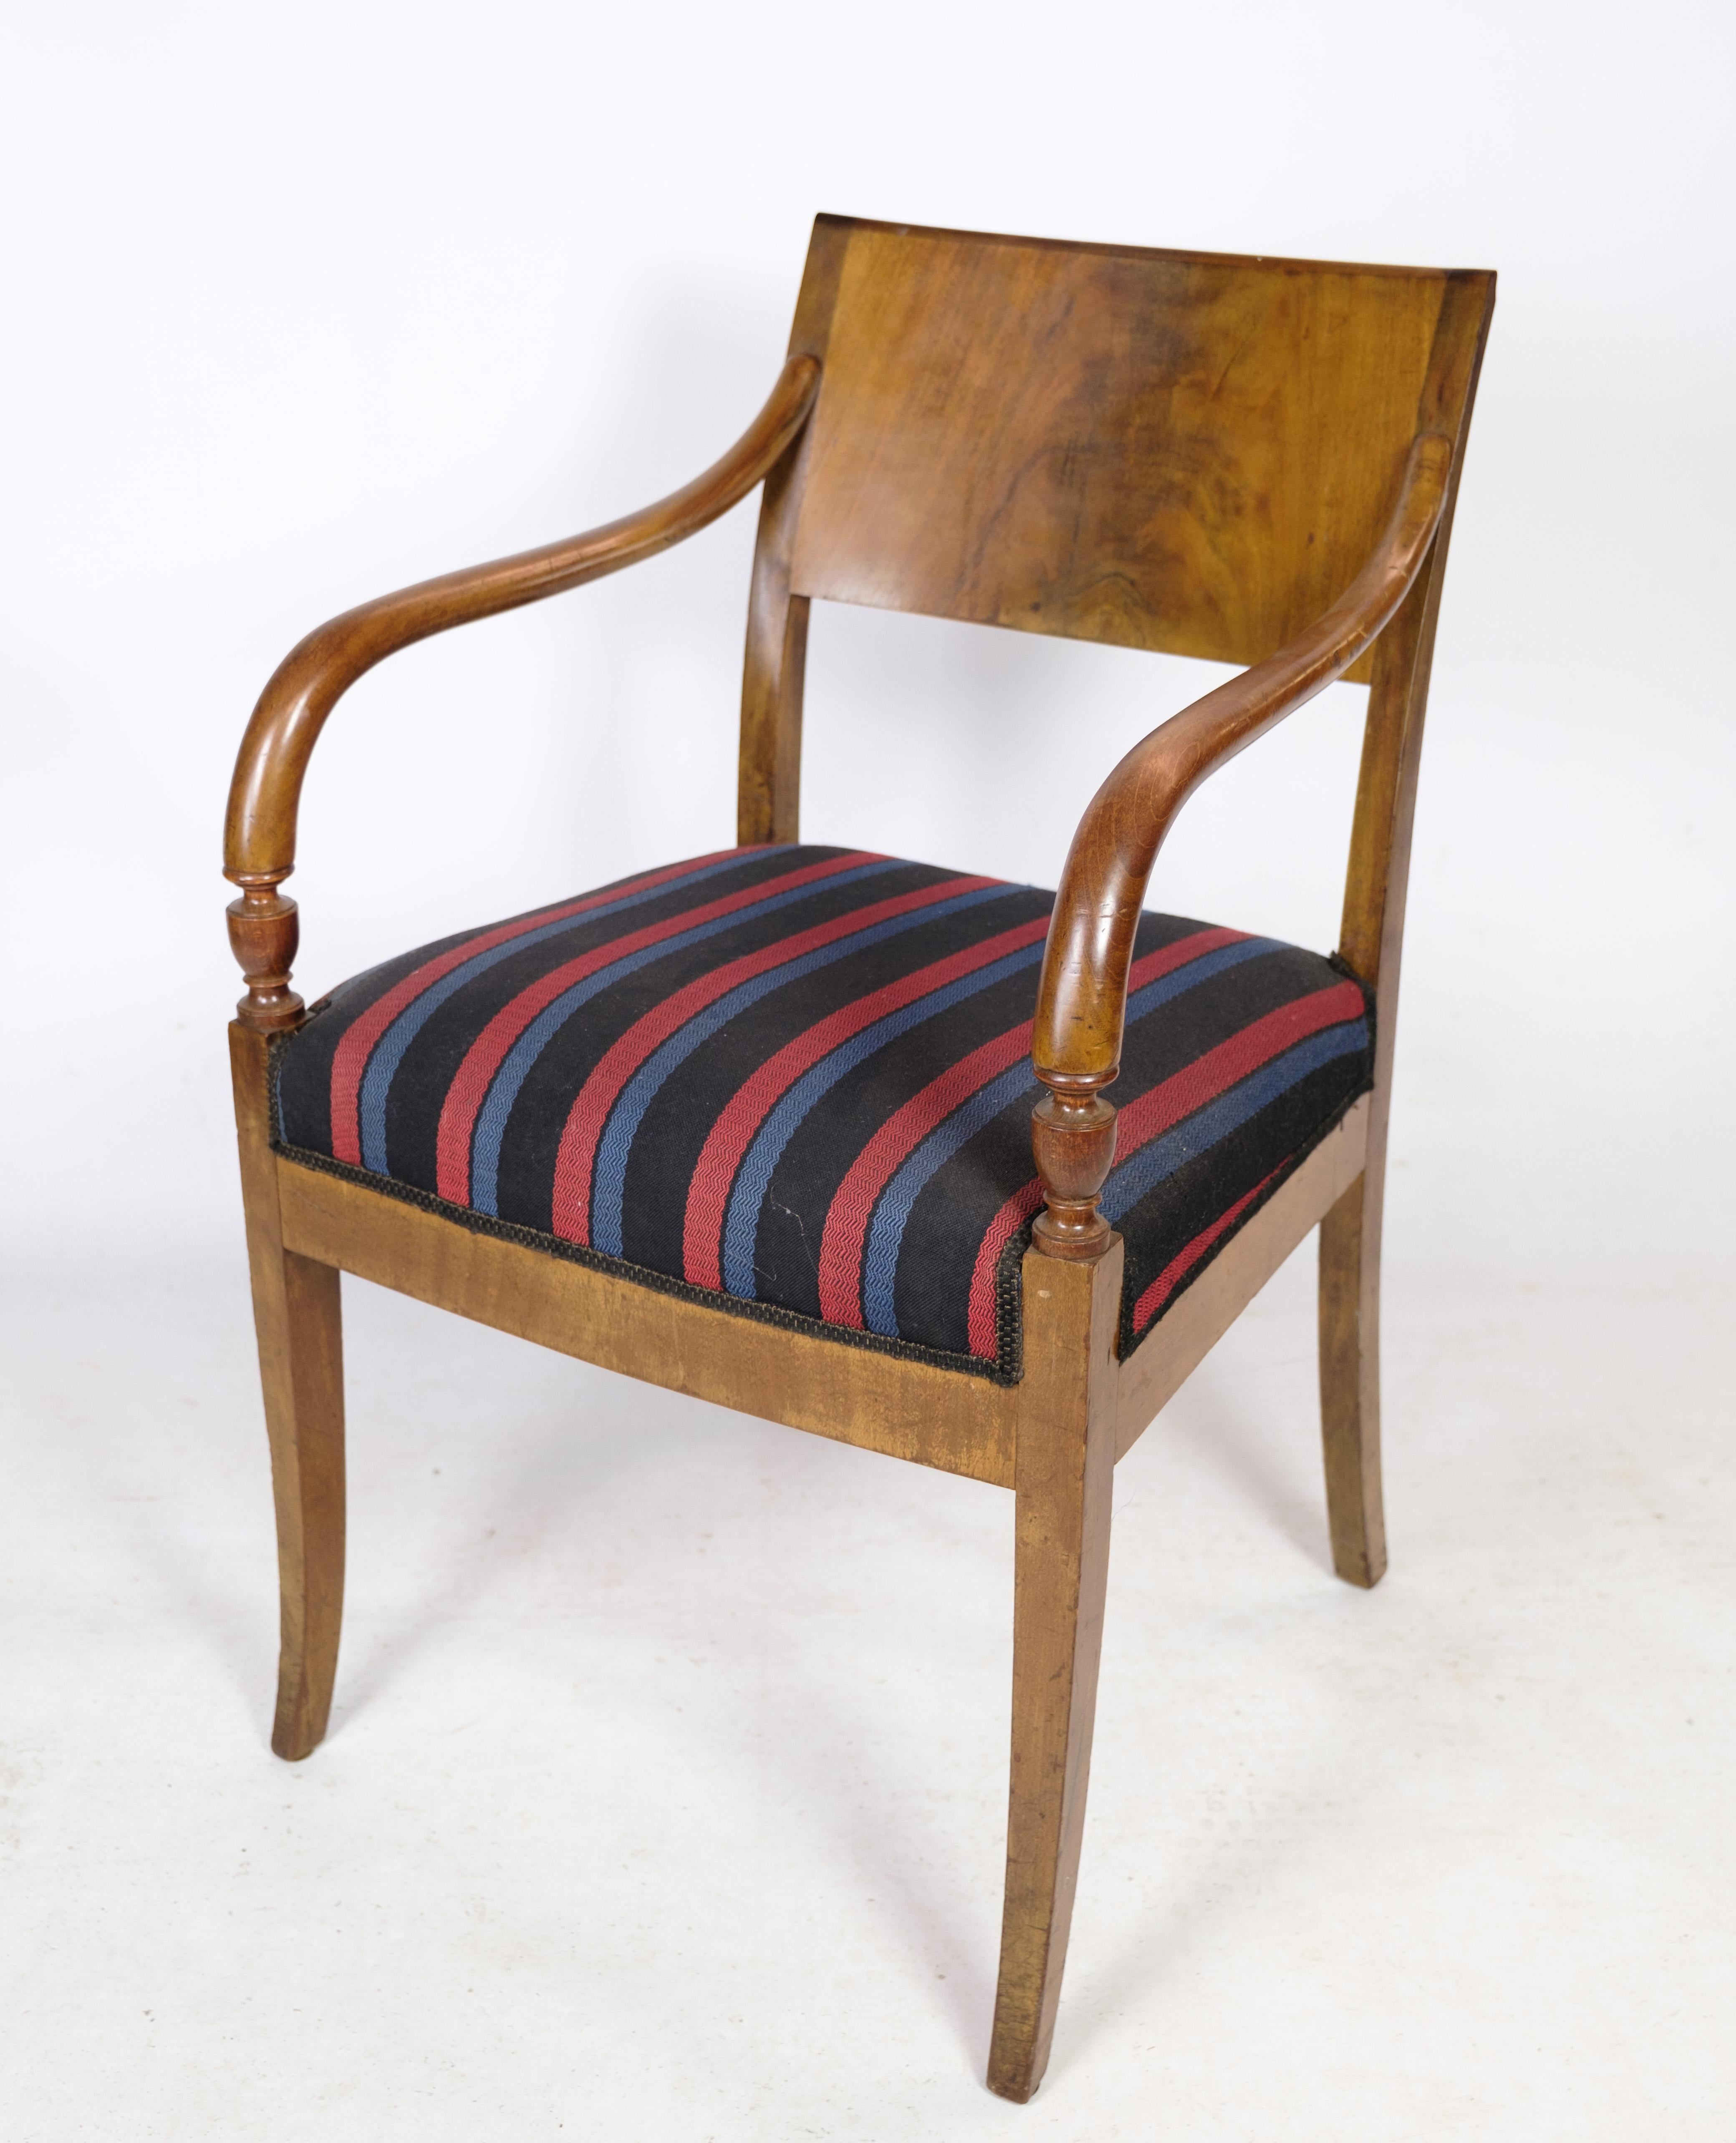 Ein Paar handpolierte Mahagoni-Sessel im dänischen Empire-Stil mit gestreiftem Stoff aus den 1920er Jahren.
Maße in cm: H:84 B:52 T:47 SH:50

Dieses Produkt wird in unserer Fachwerkstatt von unseren geschulten Mitarbeitern gründlich geprüft, um die